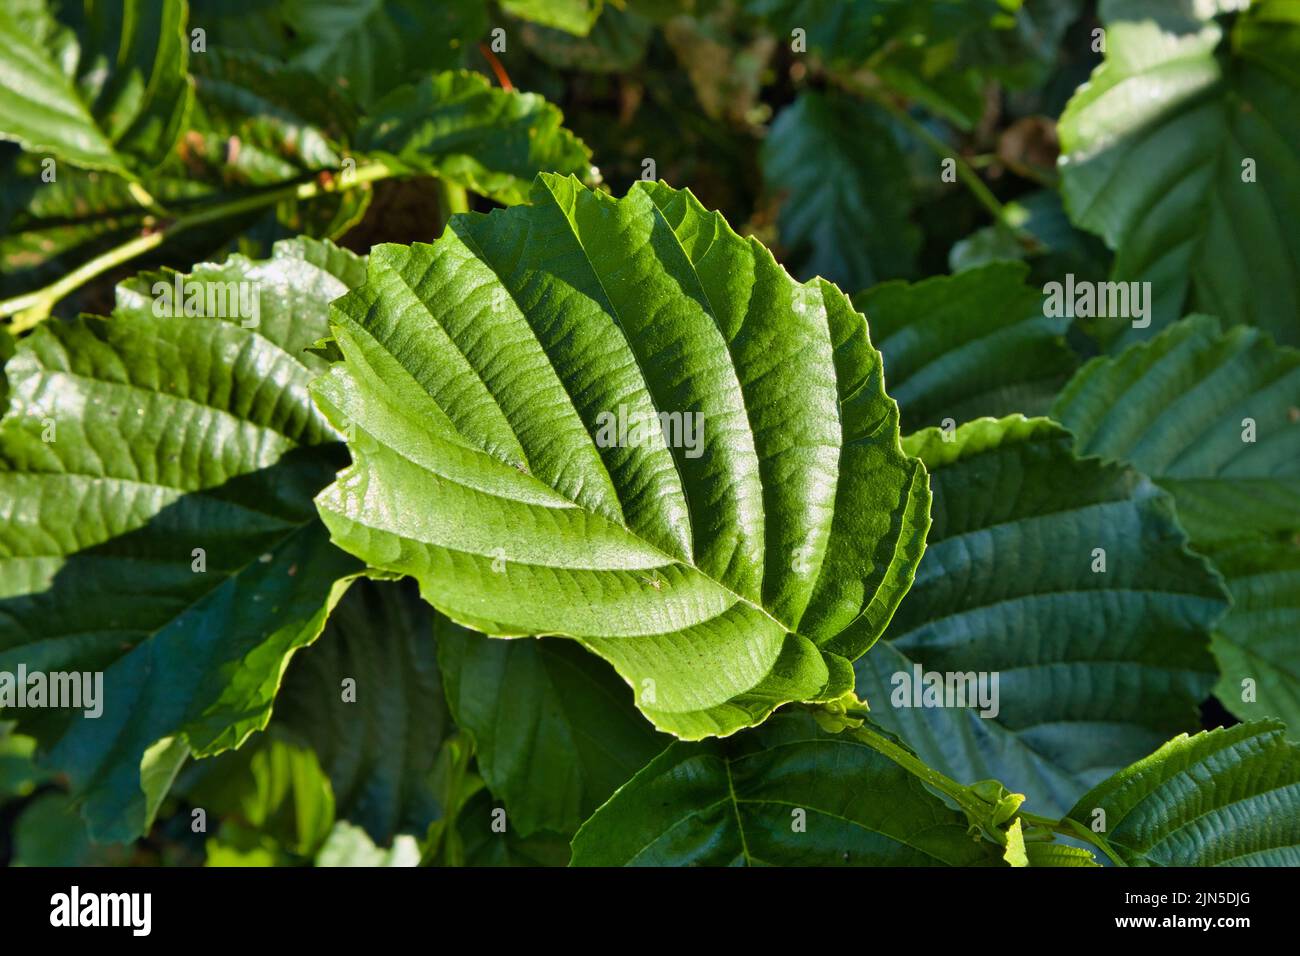 fresh green alder tree leaves Stock Photo